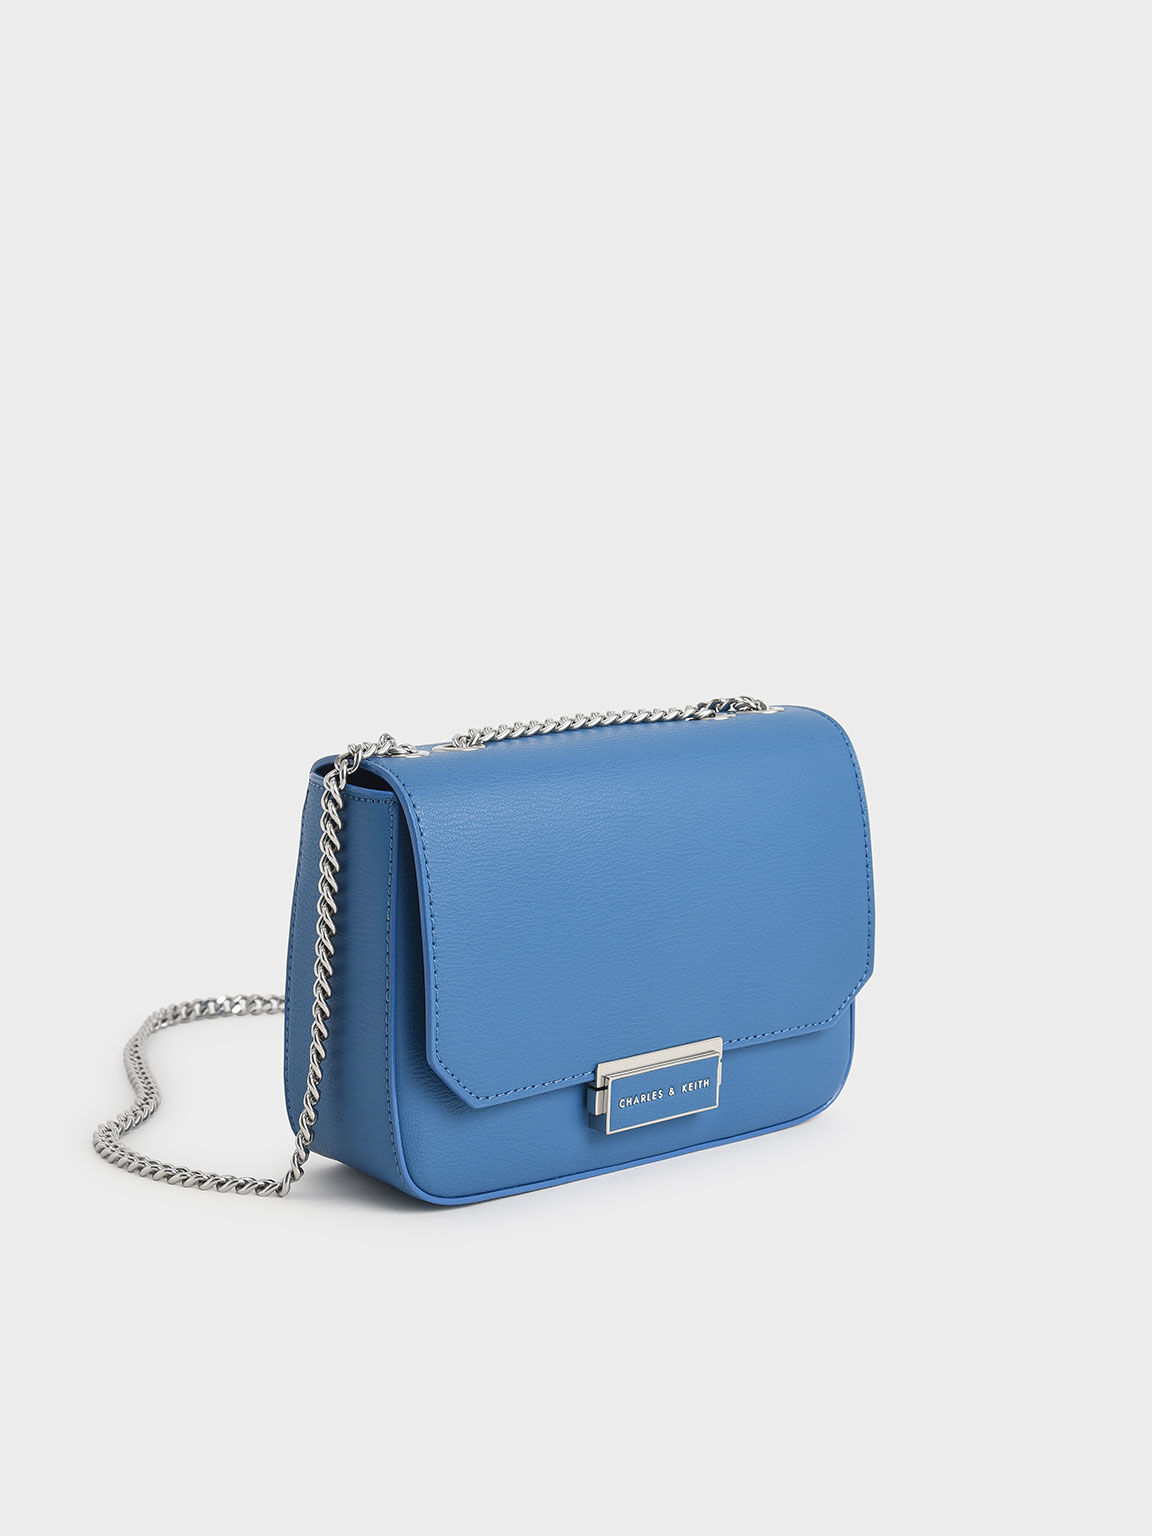 Chain Strap Shoulder Bag, Blue, hi-res